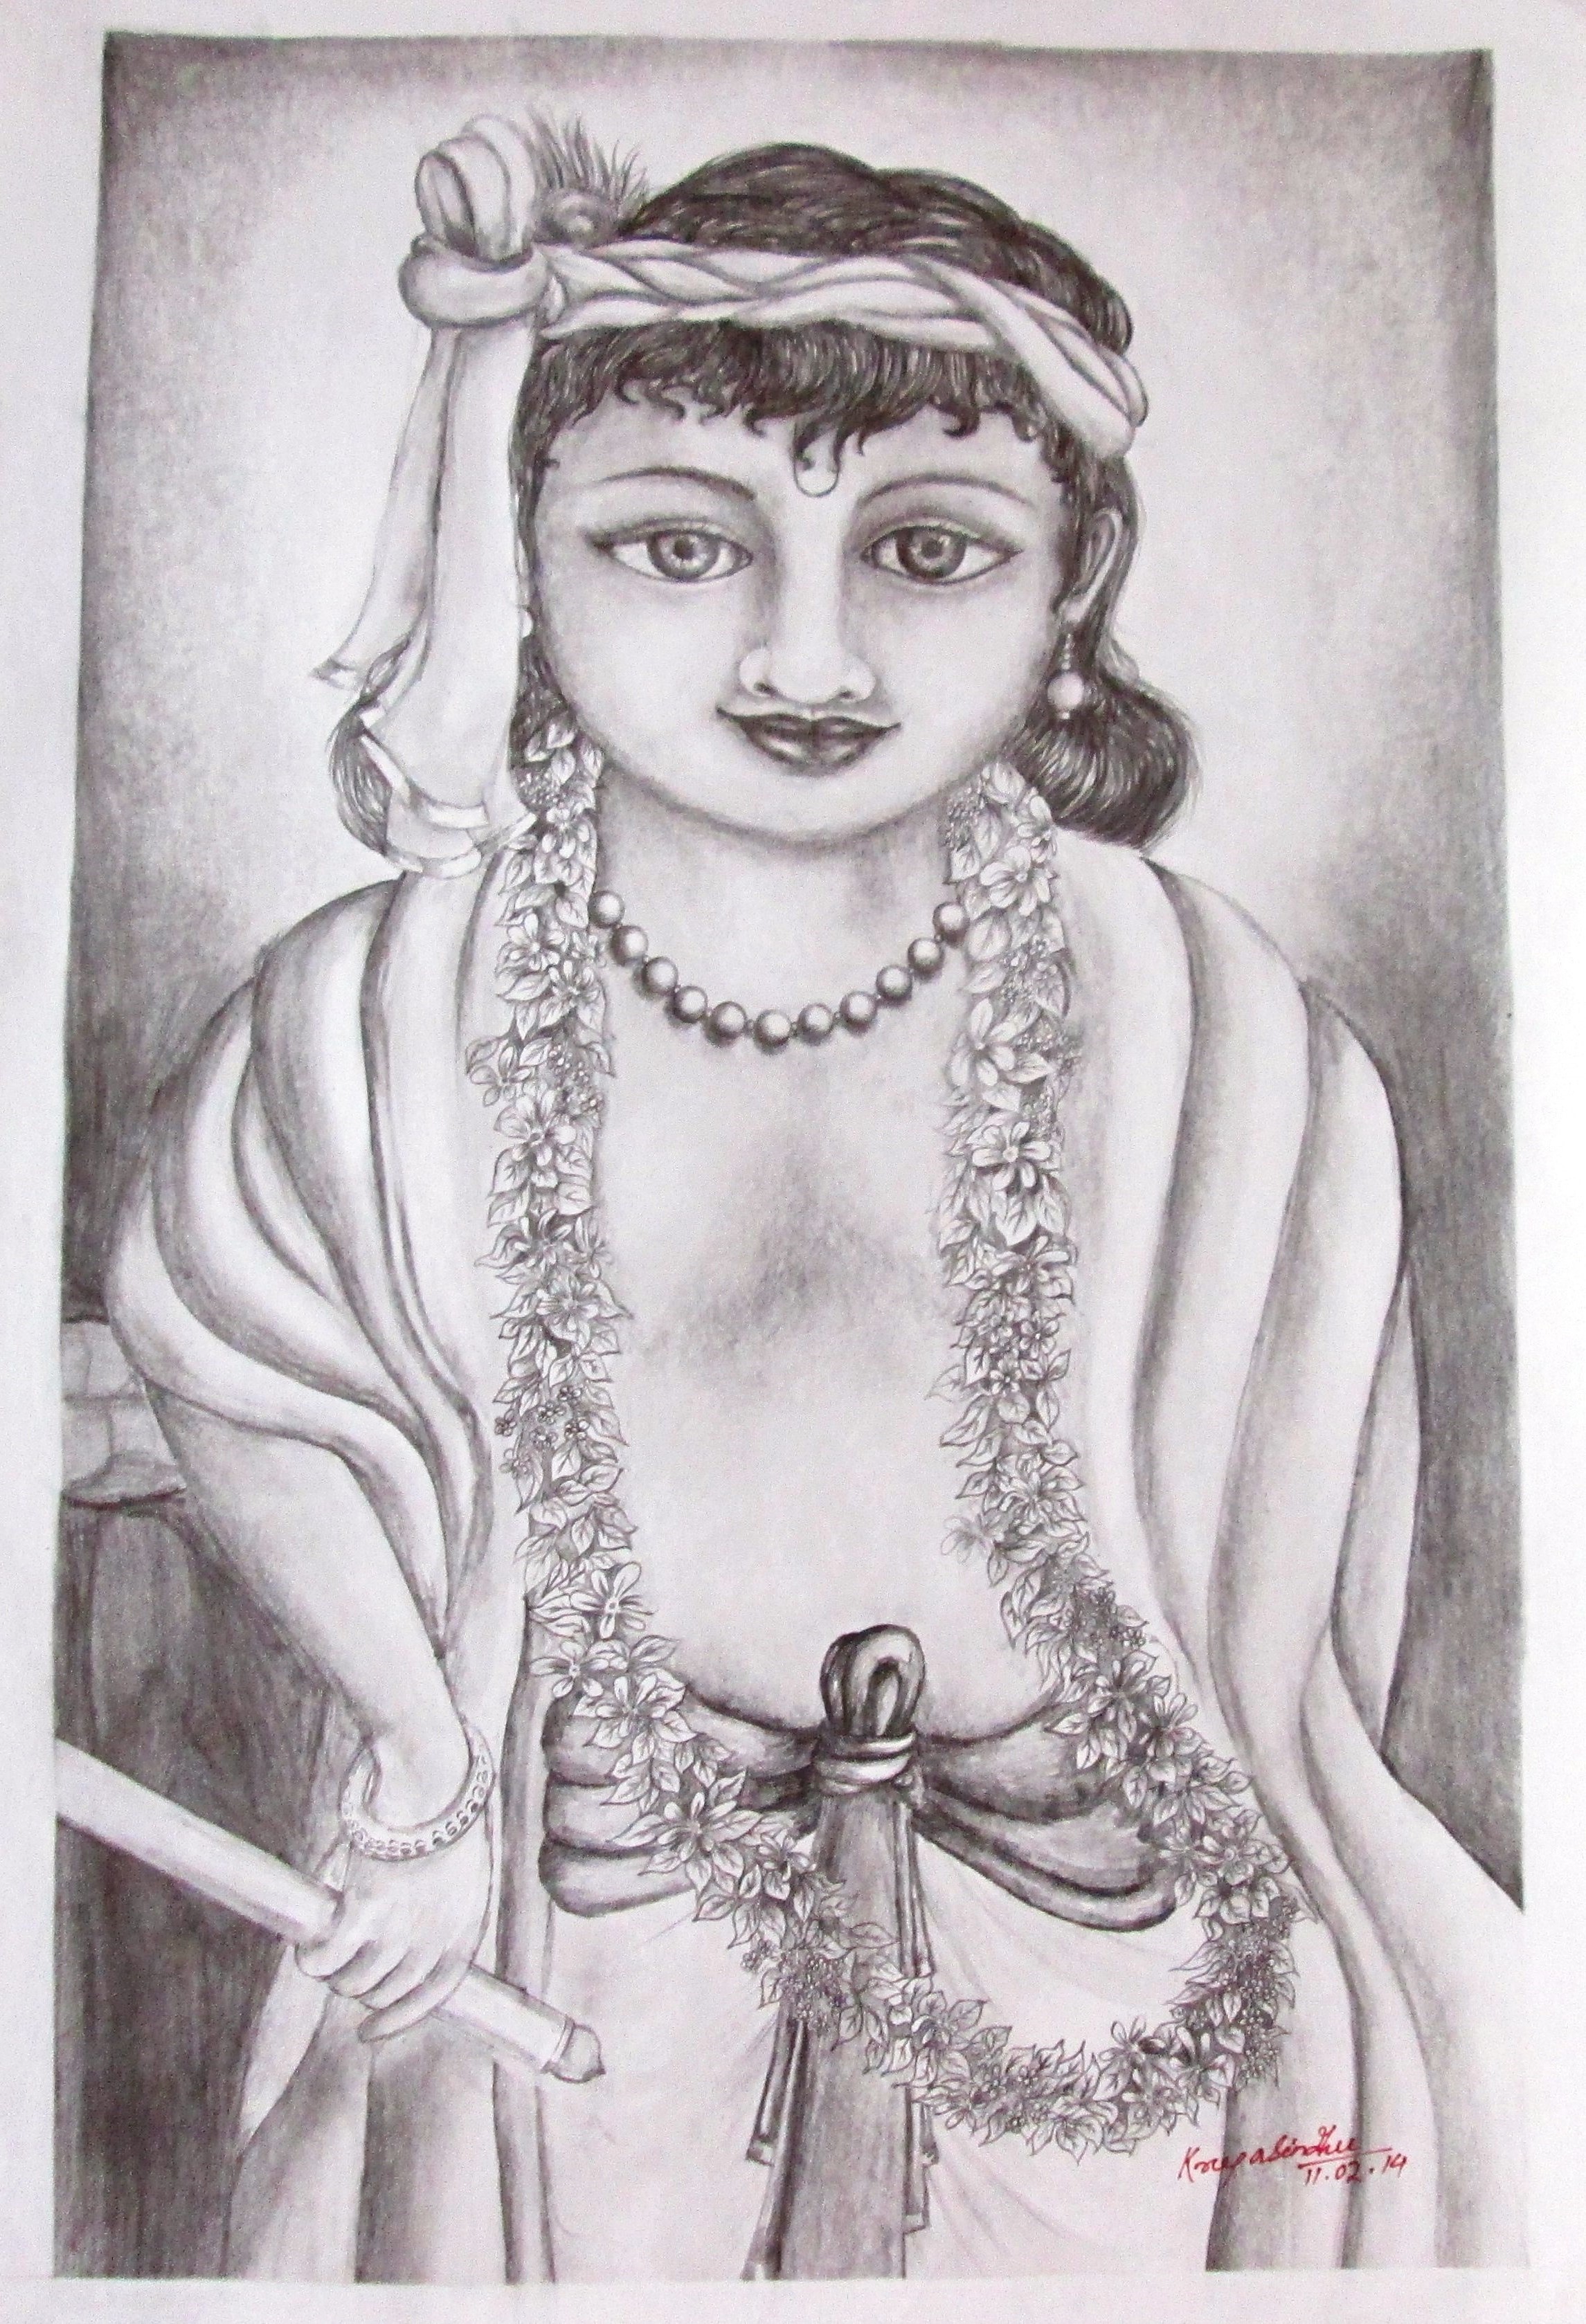 Cute Lord krishna pencil drawing // krishna pencil drawing - YouTube